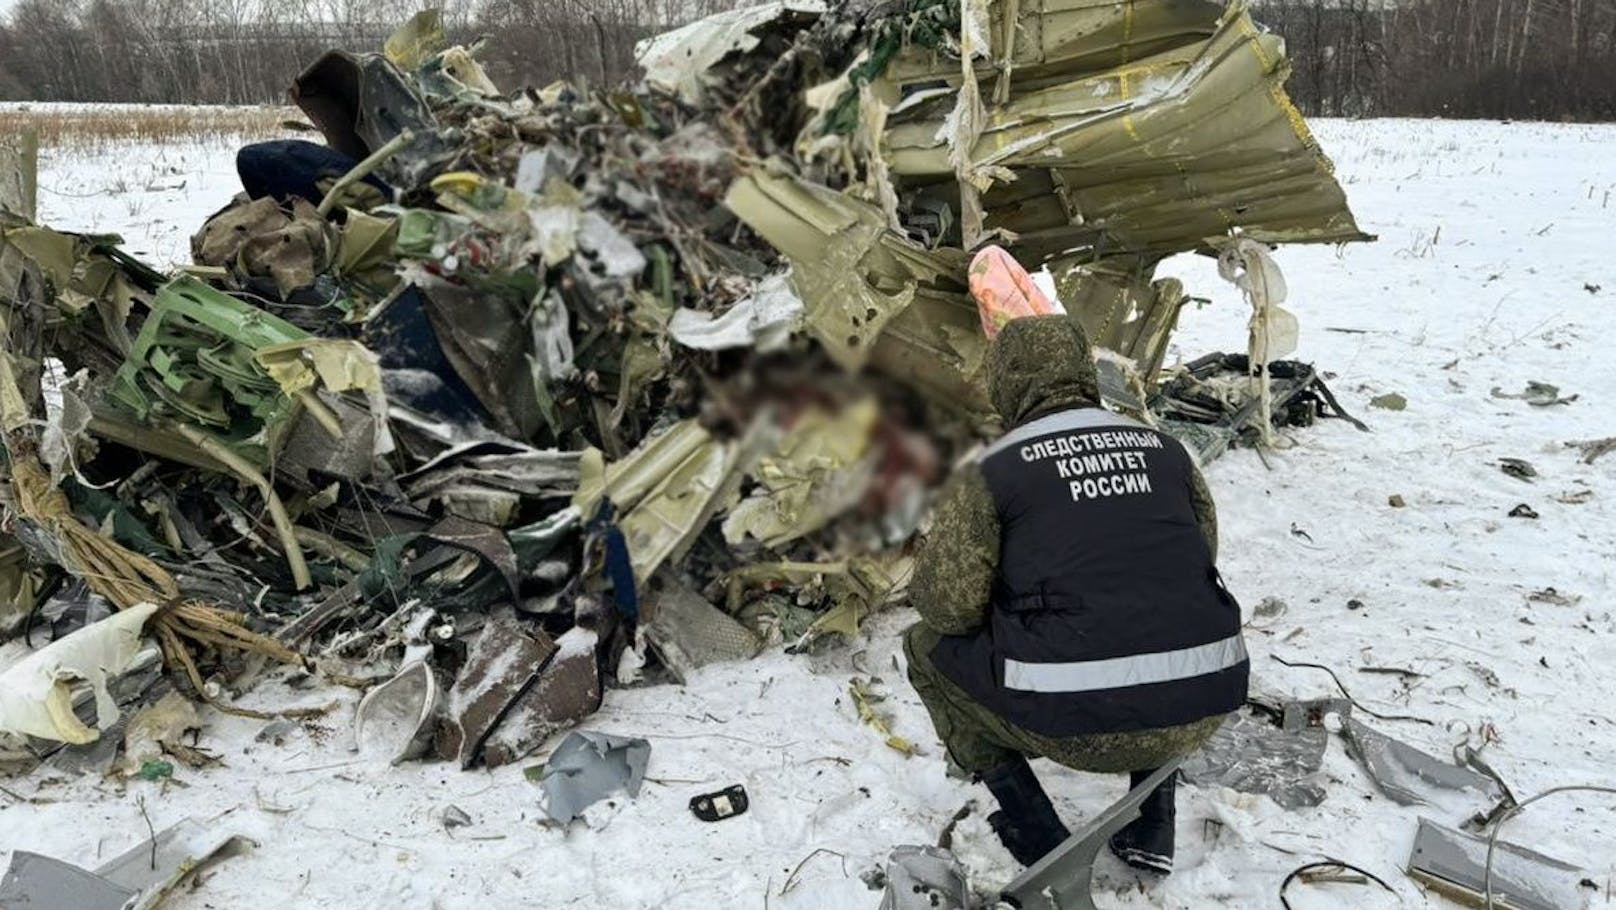 In Russland ist nach Angaben des Moskauer Verteidigungsministeriums erneut ein Militärtransportflugzeug vom Typ Iljuschin Il-76 abgestürzt – diesmal im Gebiet Iwanowo. An Bord der Maschine waren 15 Menschen.